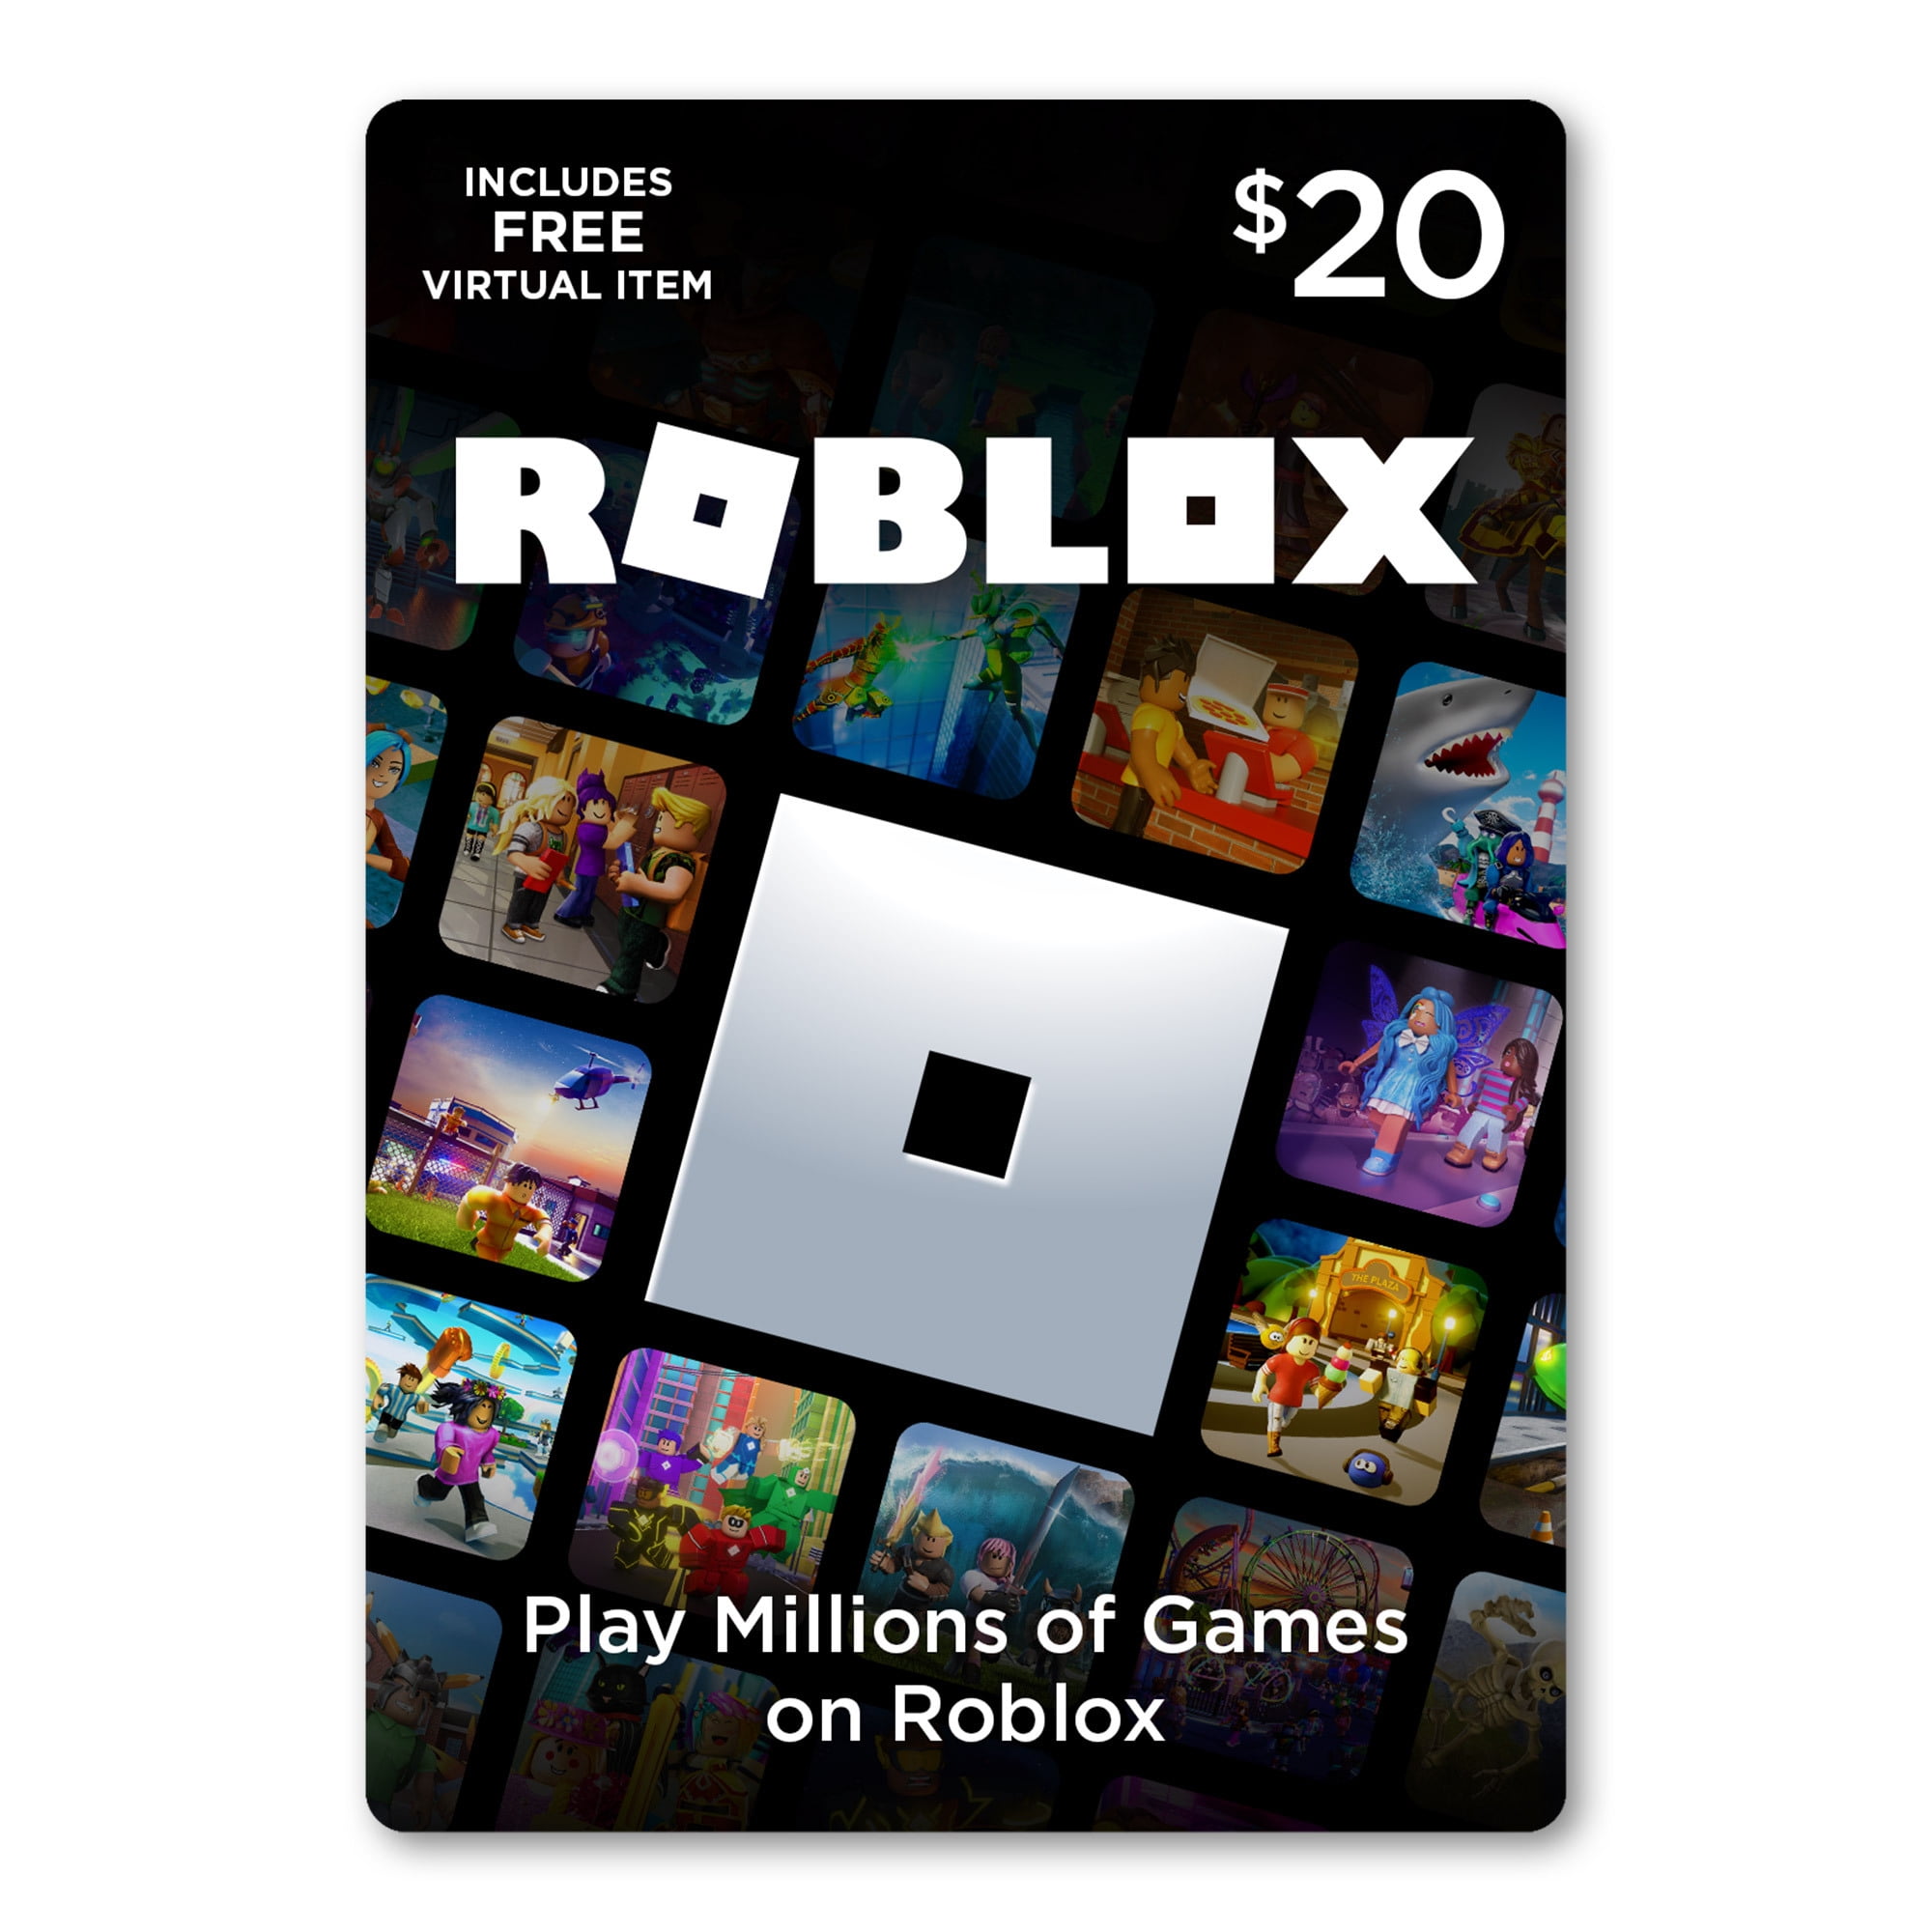 Roblox 20 Digital Gift Card Includes Exclusive Virtual Item Digital Download Walmart Com Walmart Com - 20000 robux cost